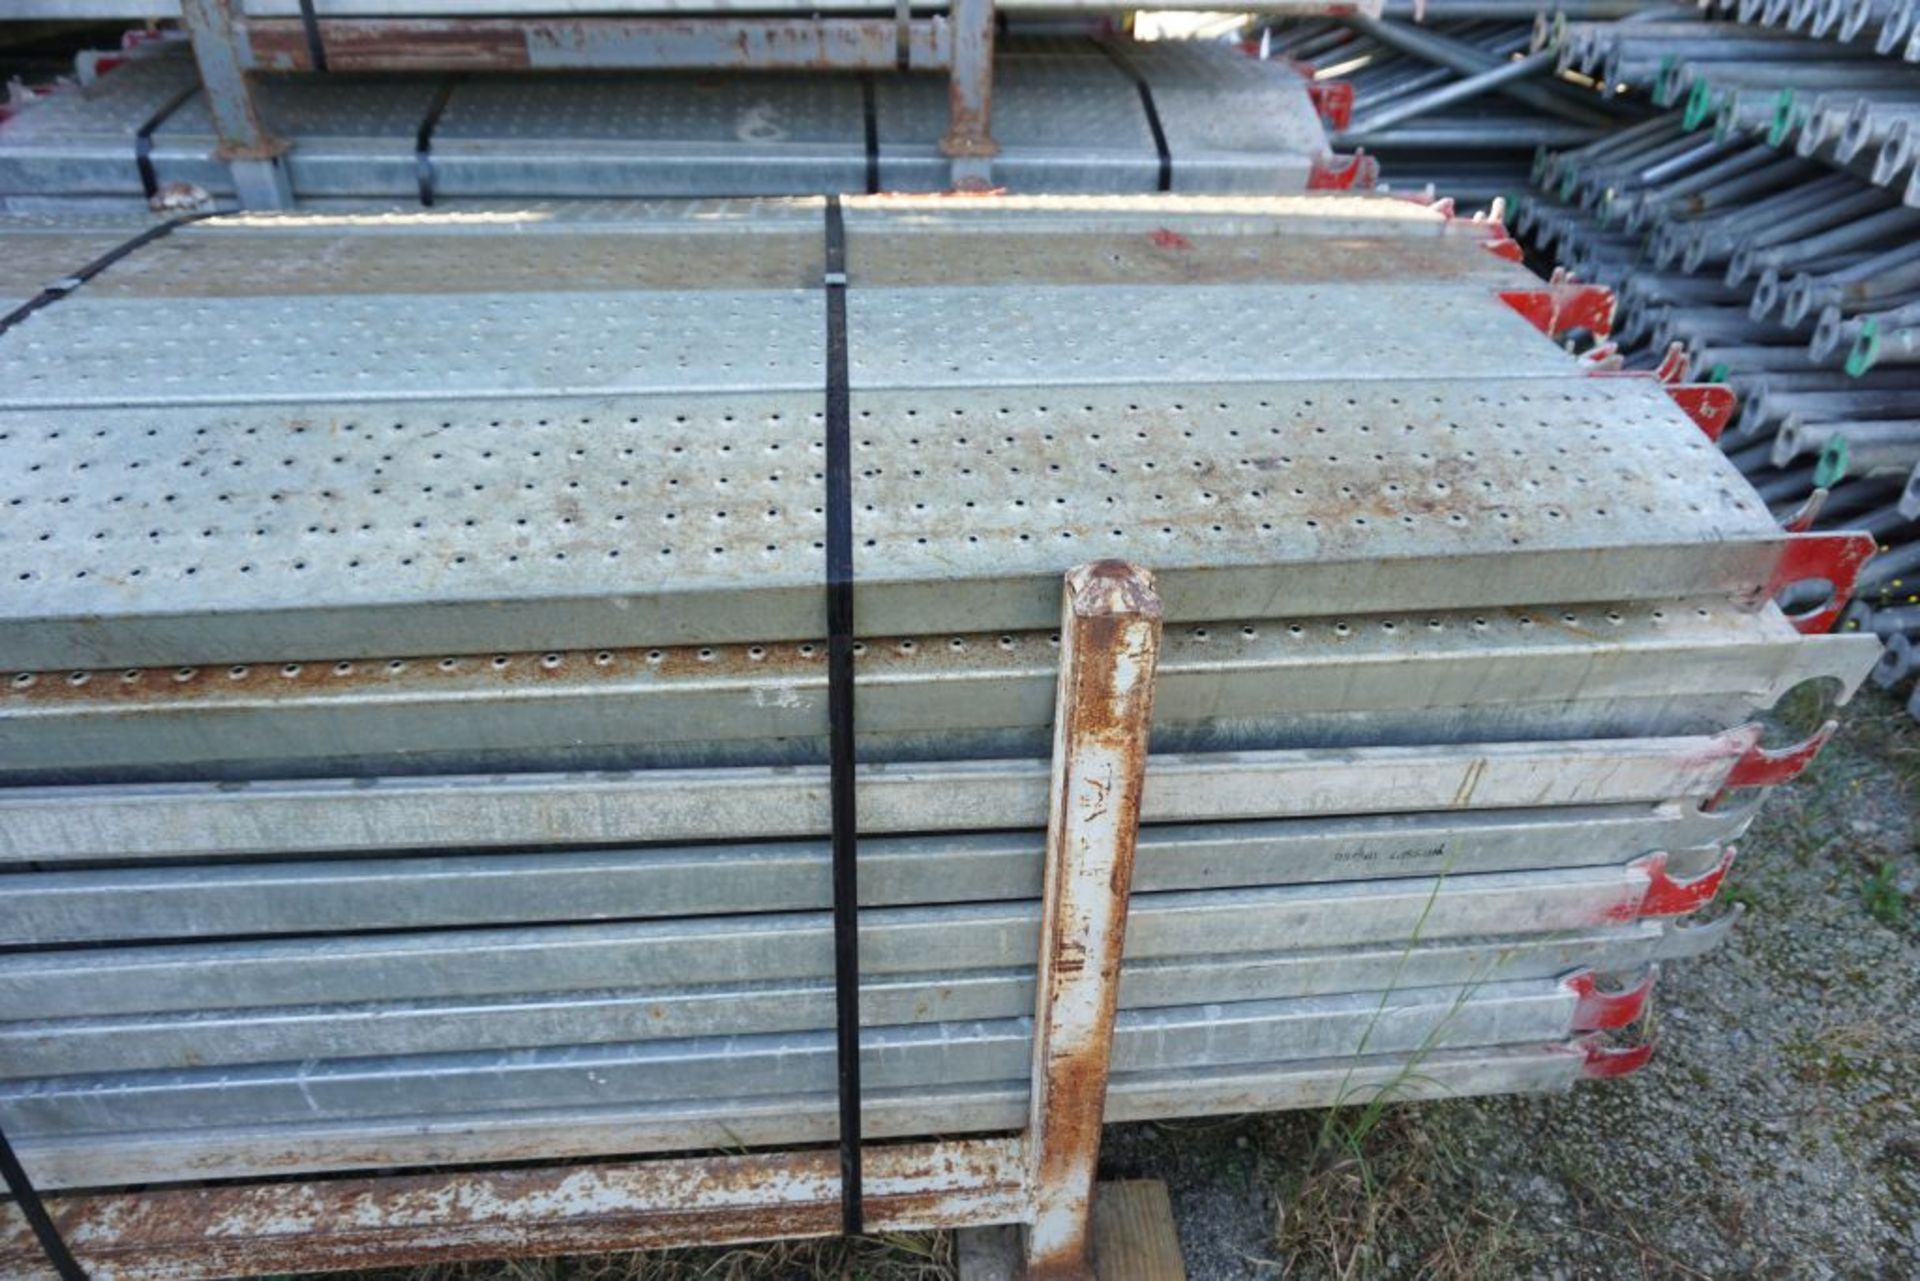 Lot of (256) 7' Steel Plank - 9" Wide - Bay Length 84" (2.13M); Type: WBSSP7 - (4) Racks Per Lot - - Image 8 of 12